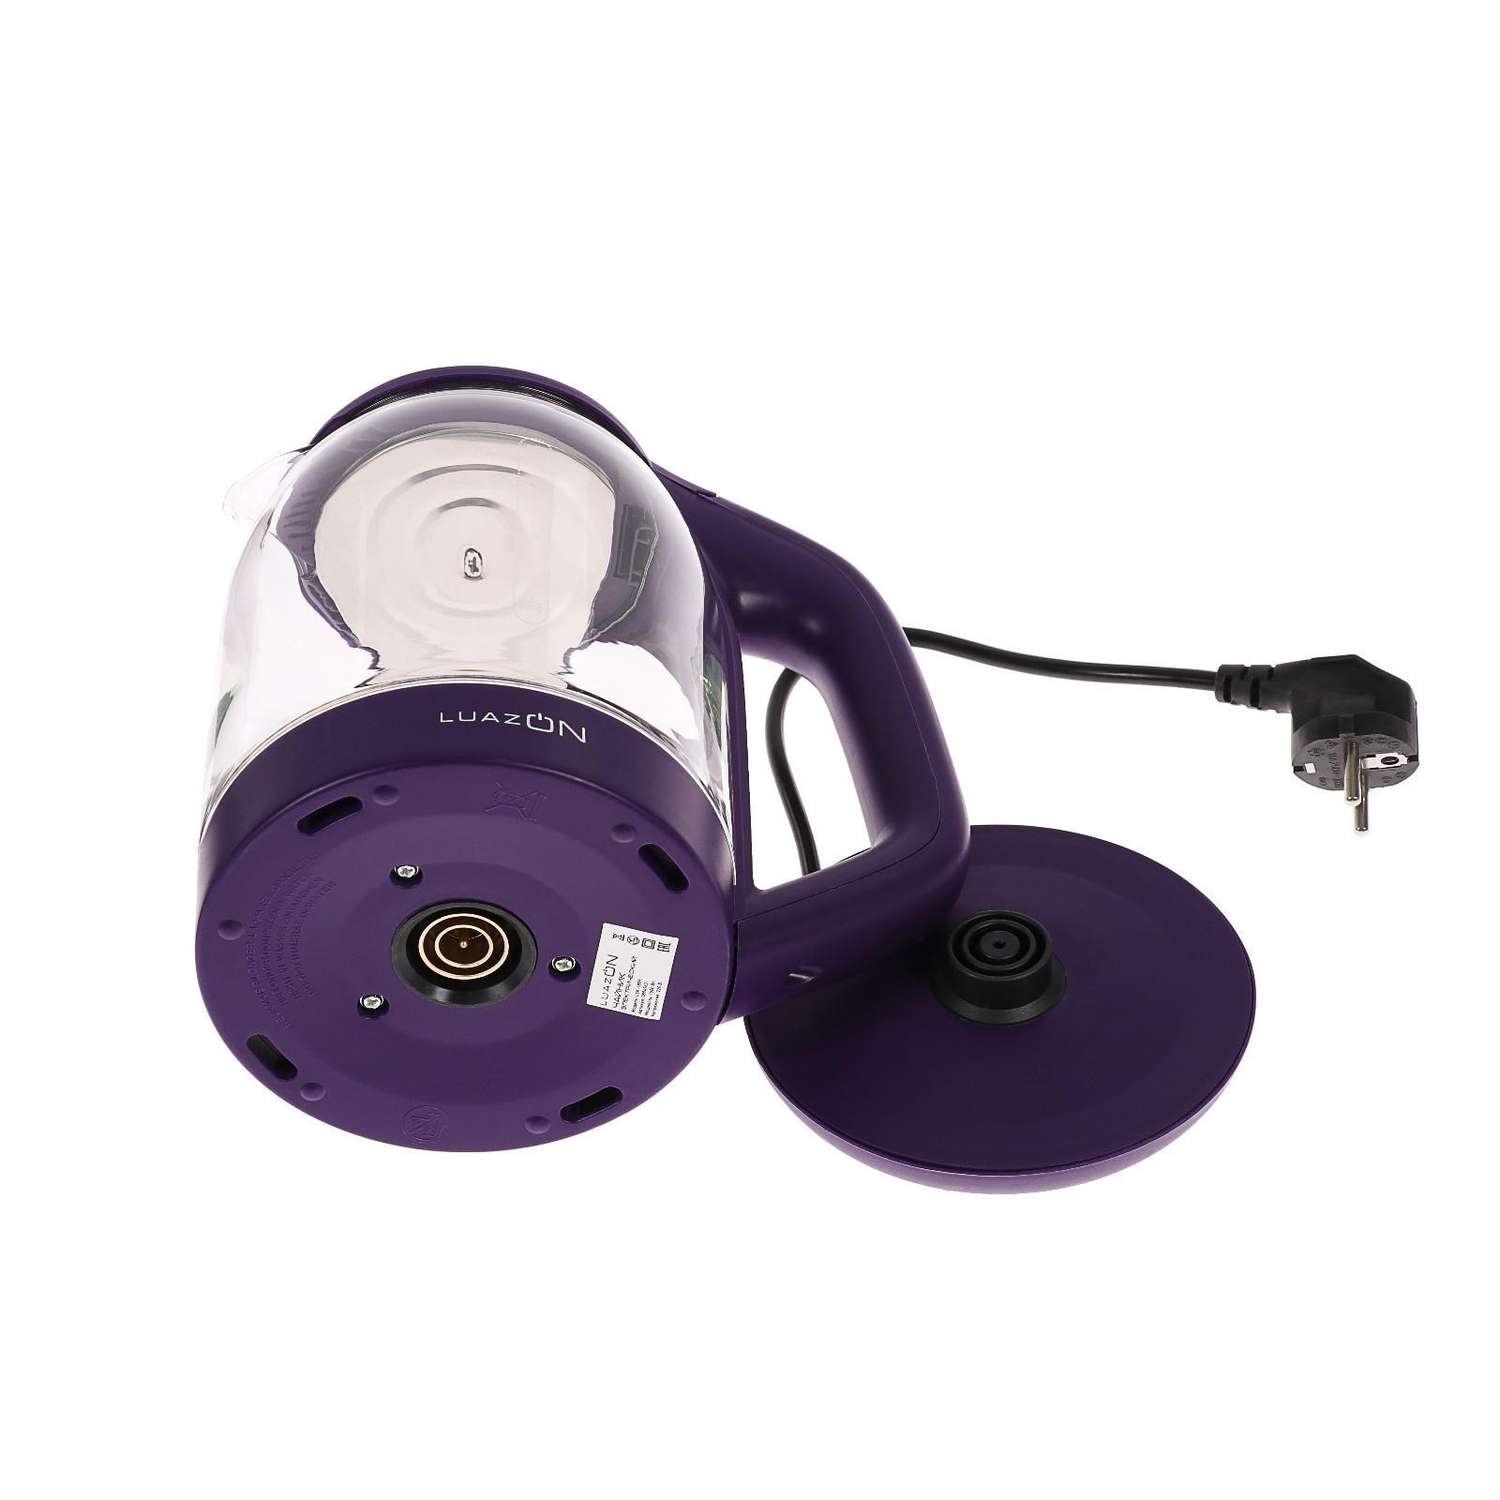 Чайник Luazon Home электрический LSK-1809 стекло 1.8 л 1500 Вт подсветка фиолетовый - фото 9